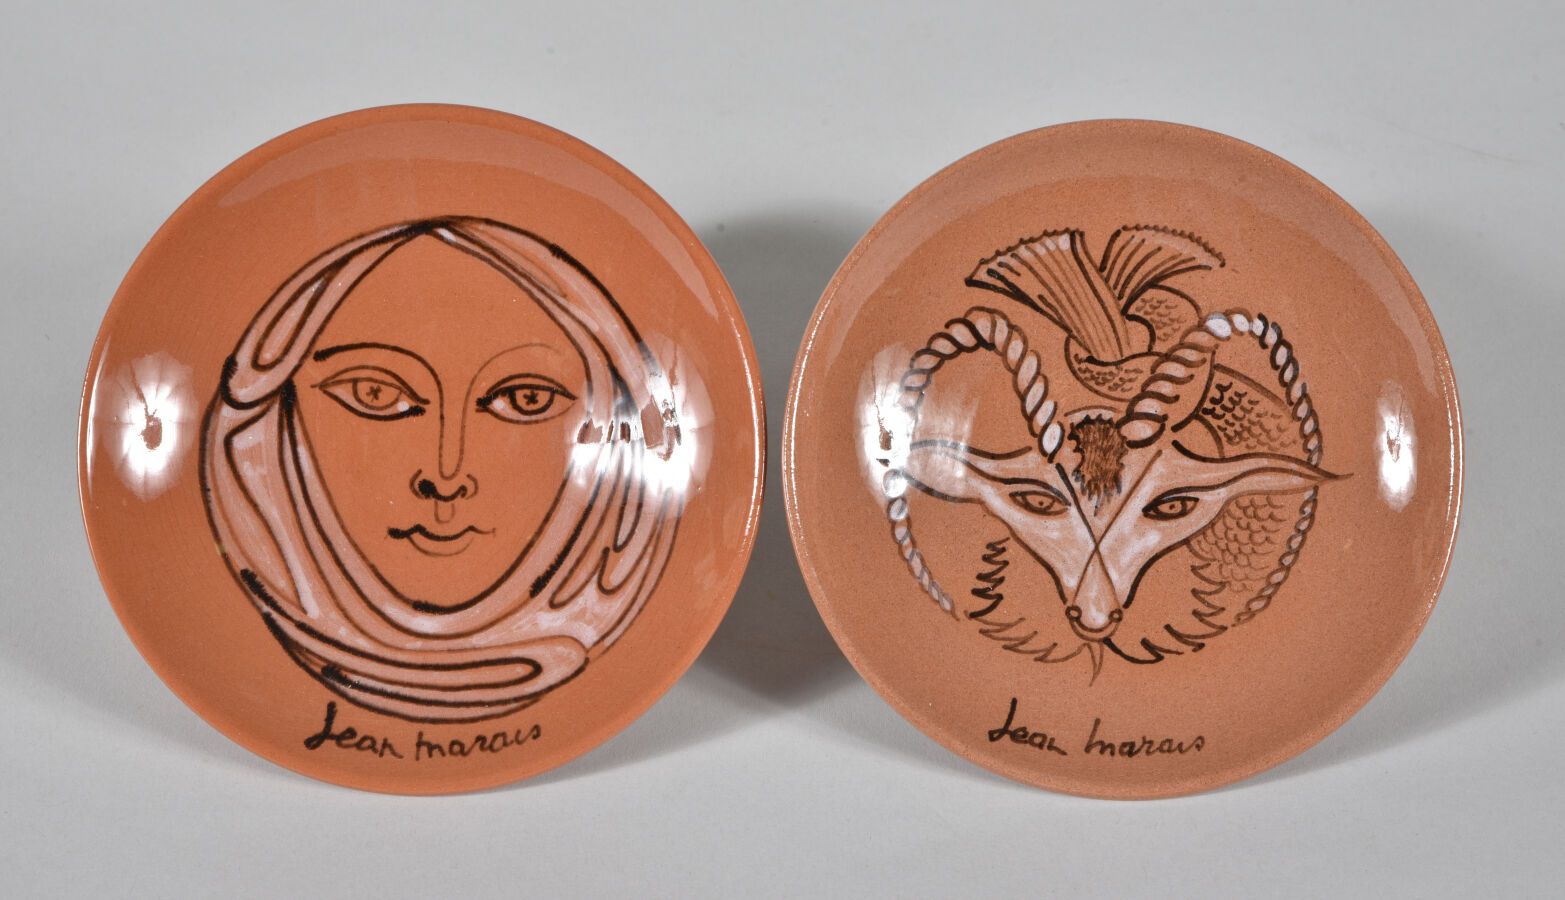 Null 让-马莱斯(Jean MARAIS) (1913-1998)

两个圆形的陶瓷碗，一个装饰着一个女人的脸，另一个装饰着一个神奇的动物。

在装饰和背面&hellip;